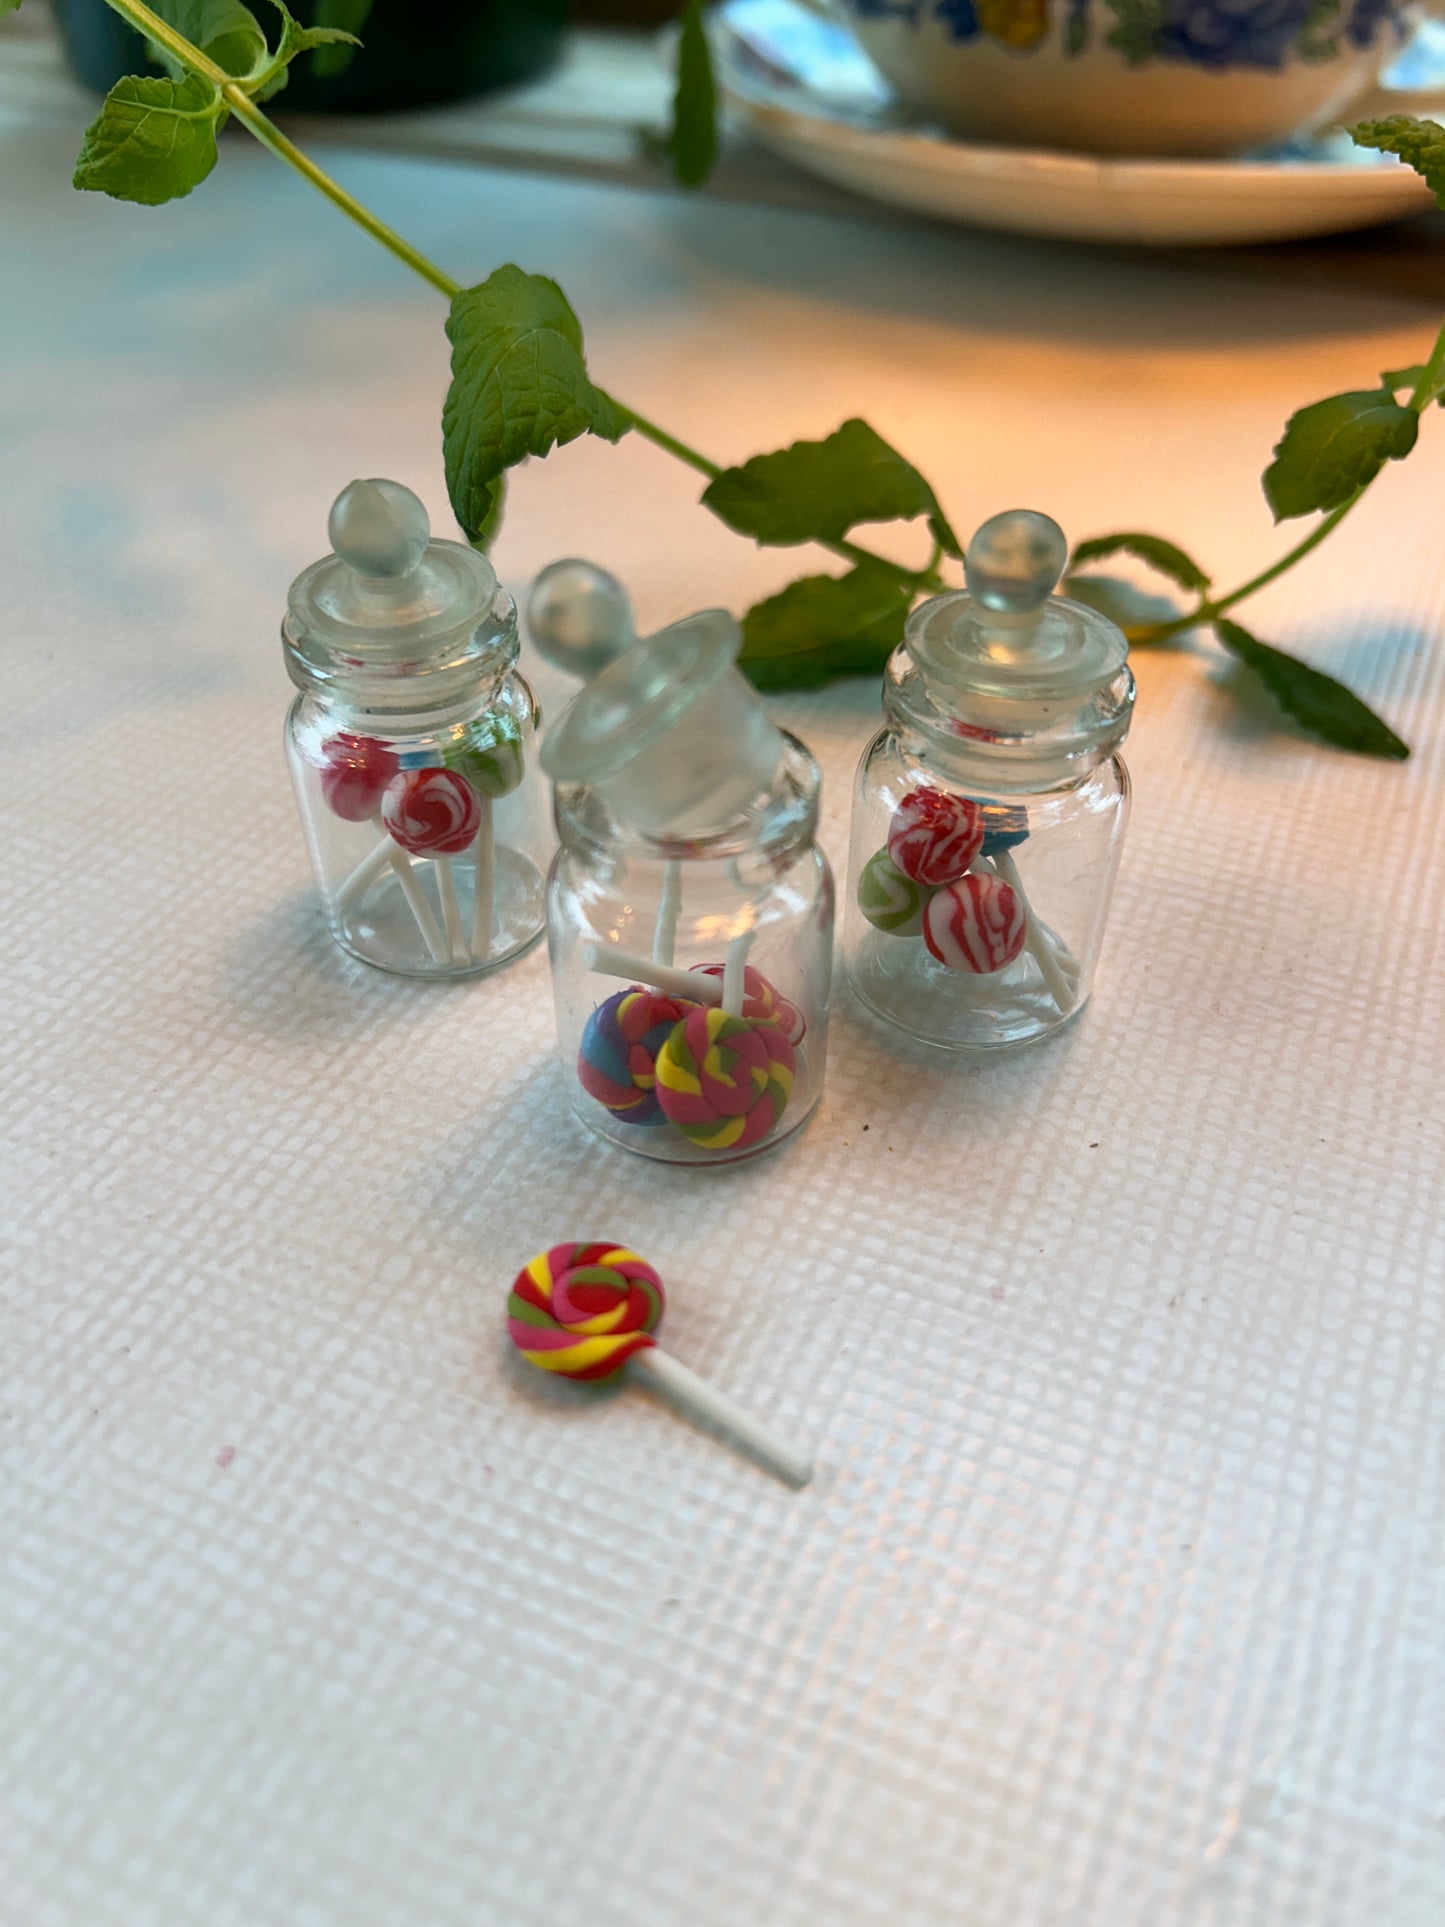 Fra musenes spiskammers ; krukker fylt med frukt og søtsaker. Miniatyrer.